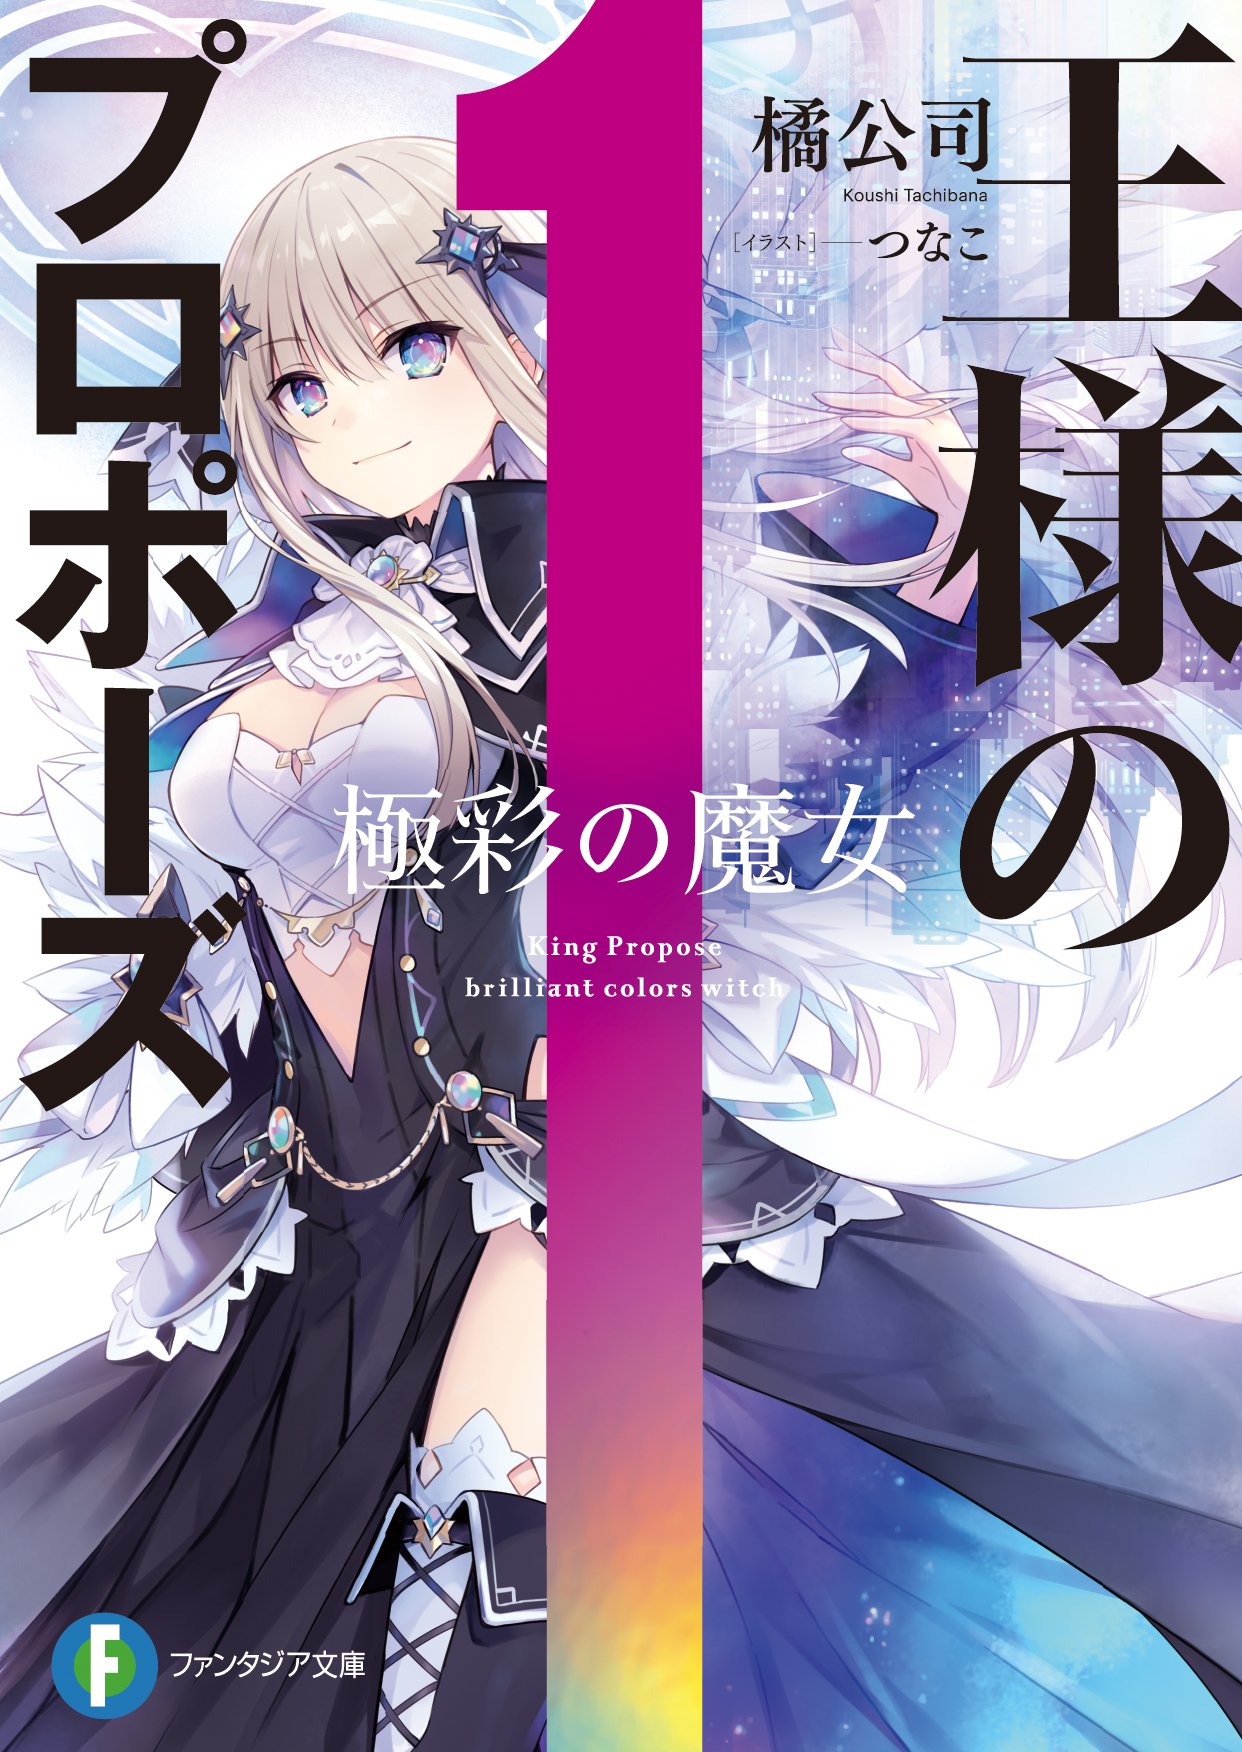 Ousama no Propose light novel cover